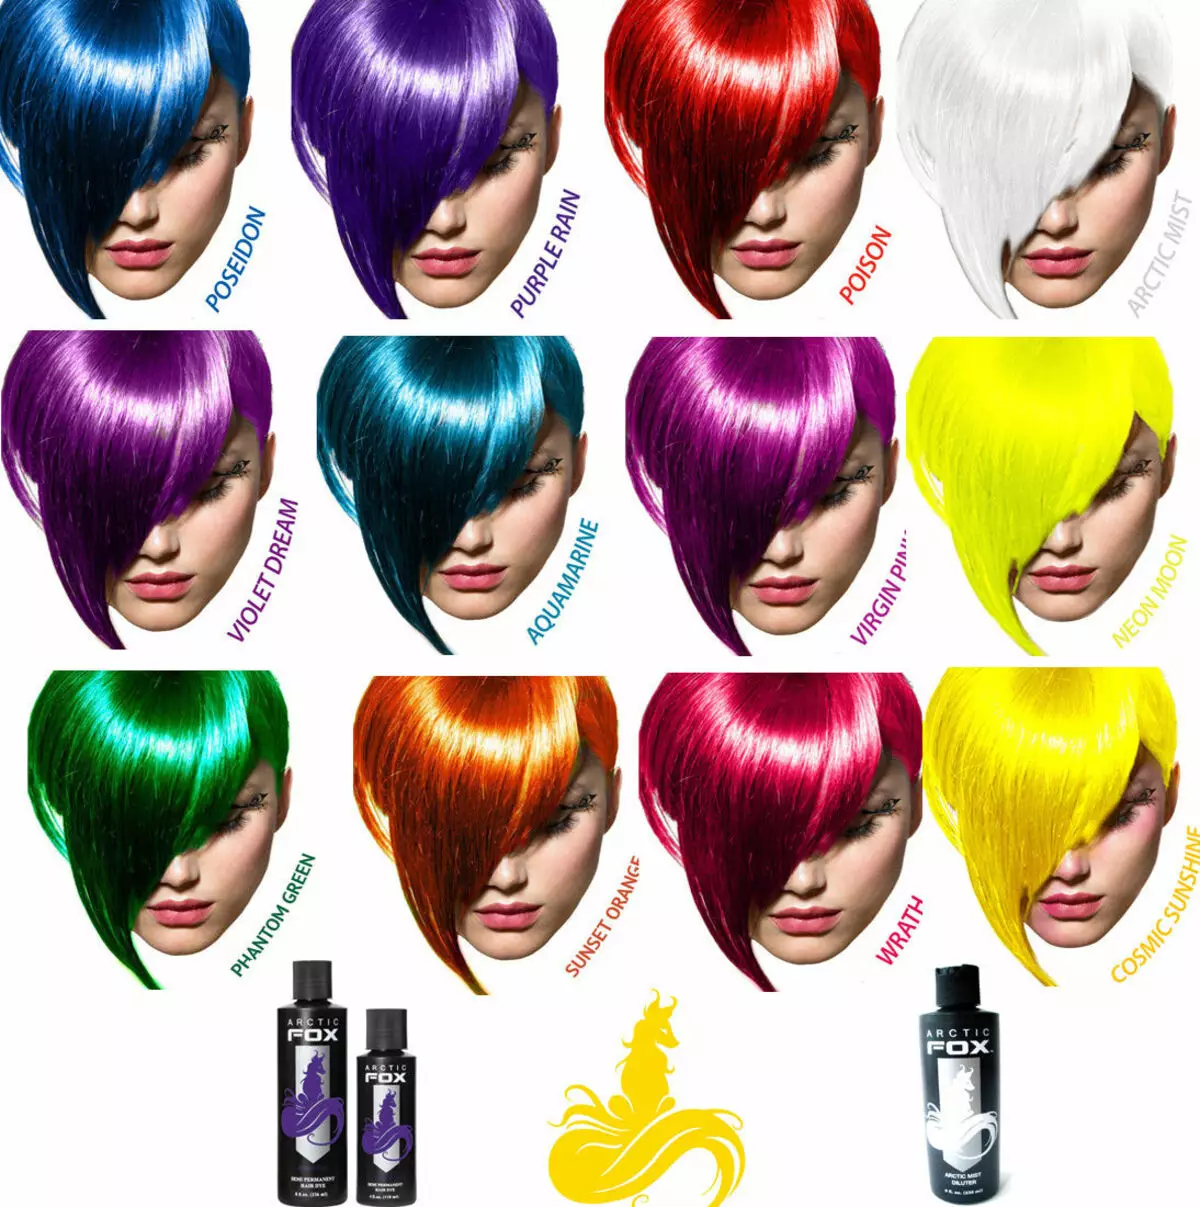 Vernice per capelli per bambini: come scegliere un bagno con acqua e come applicare il set di colori per capelli? 5456_14